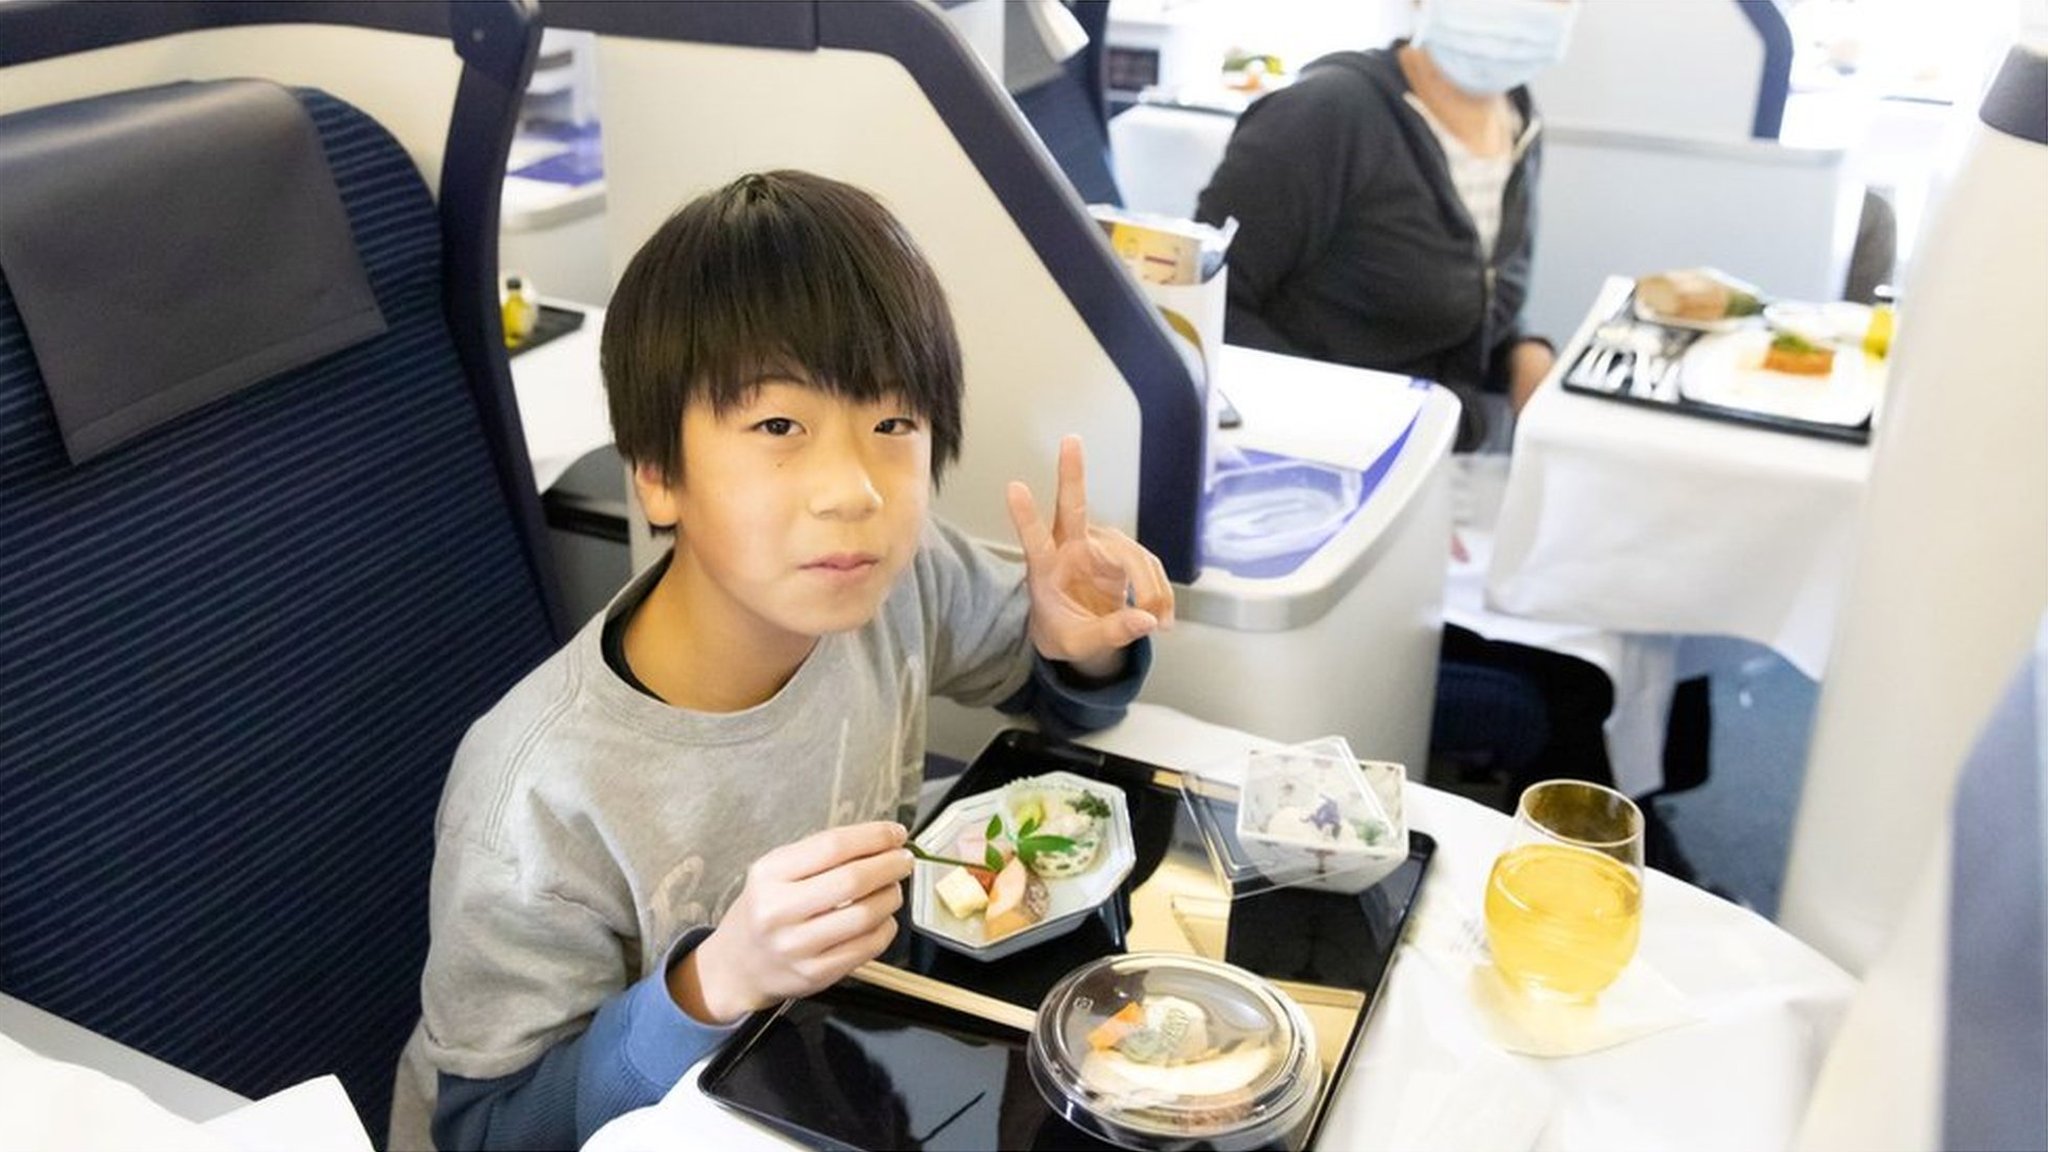 全日空の「飛行機レストラン」が人気 ファーストクラスが6万円 - BBC ...